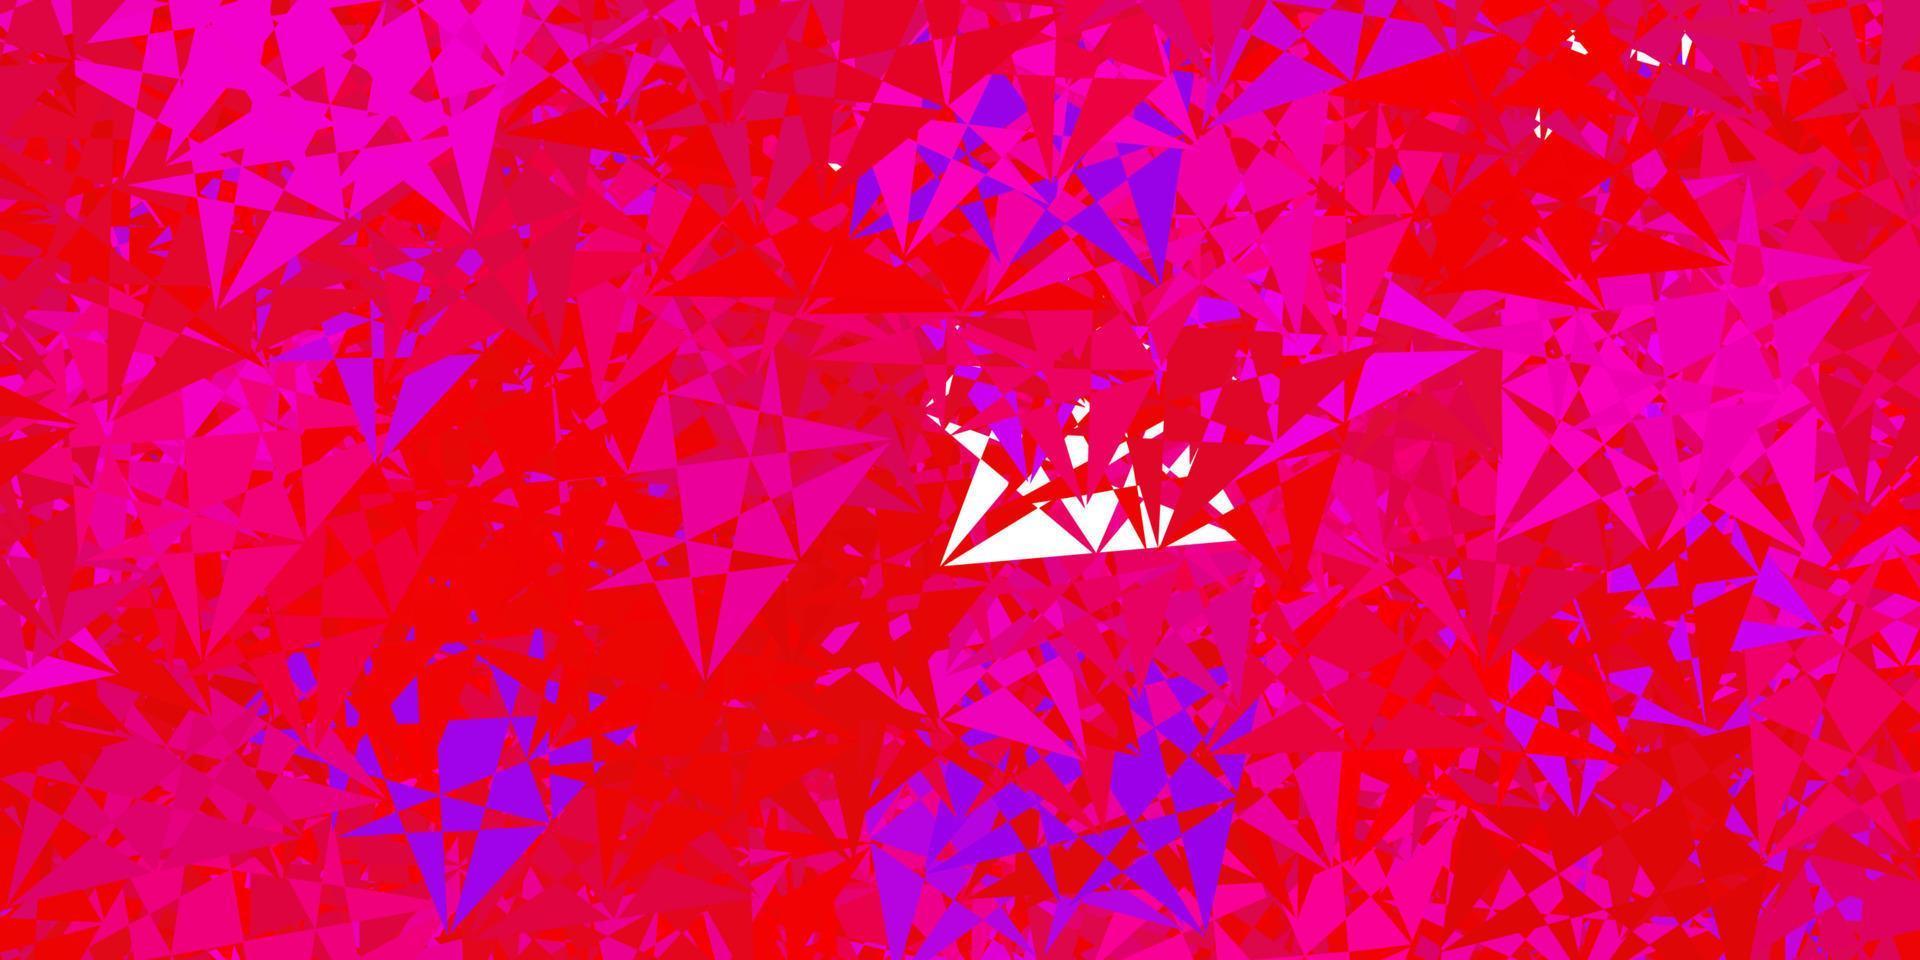 mörkblått, rött vektormönster med månghörniga former. vektor